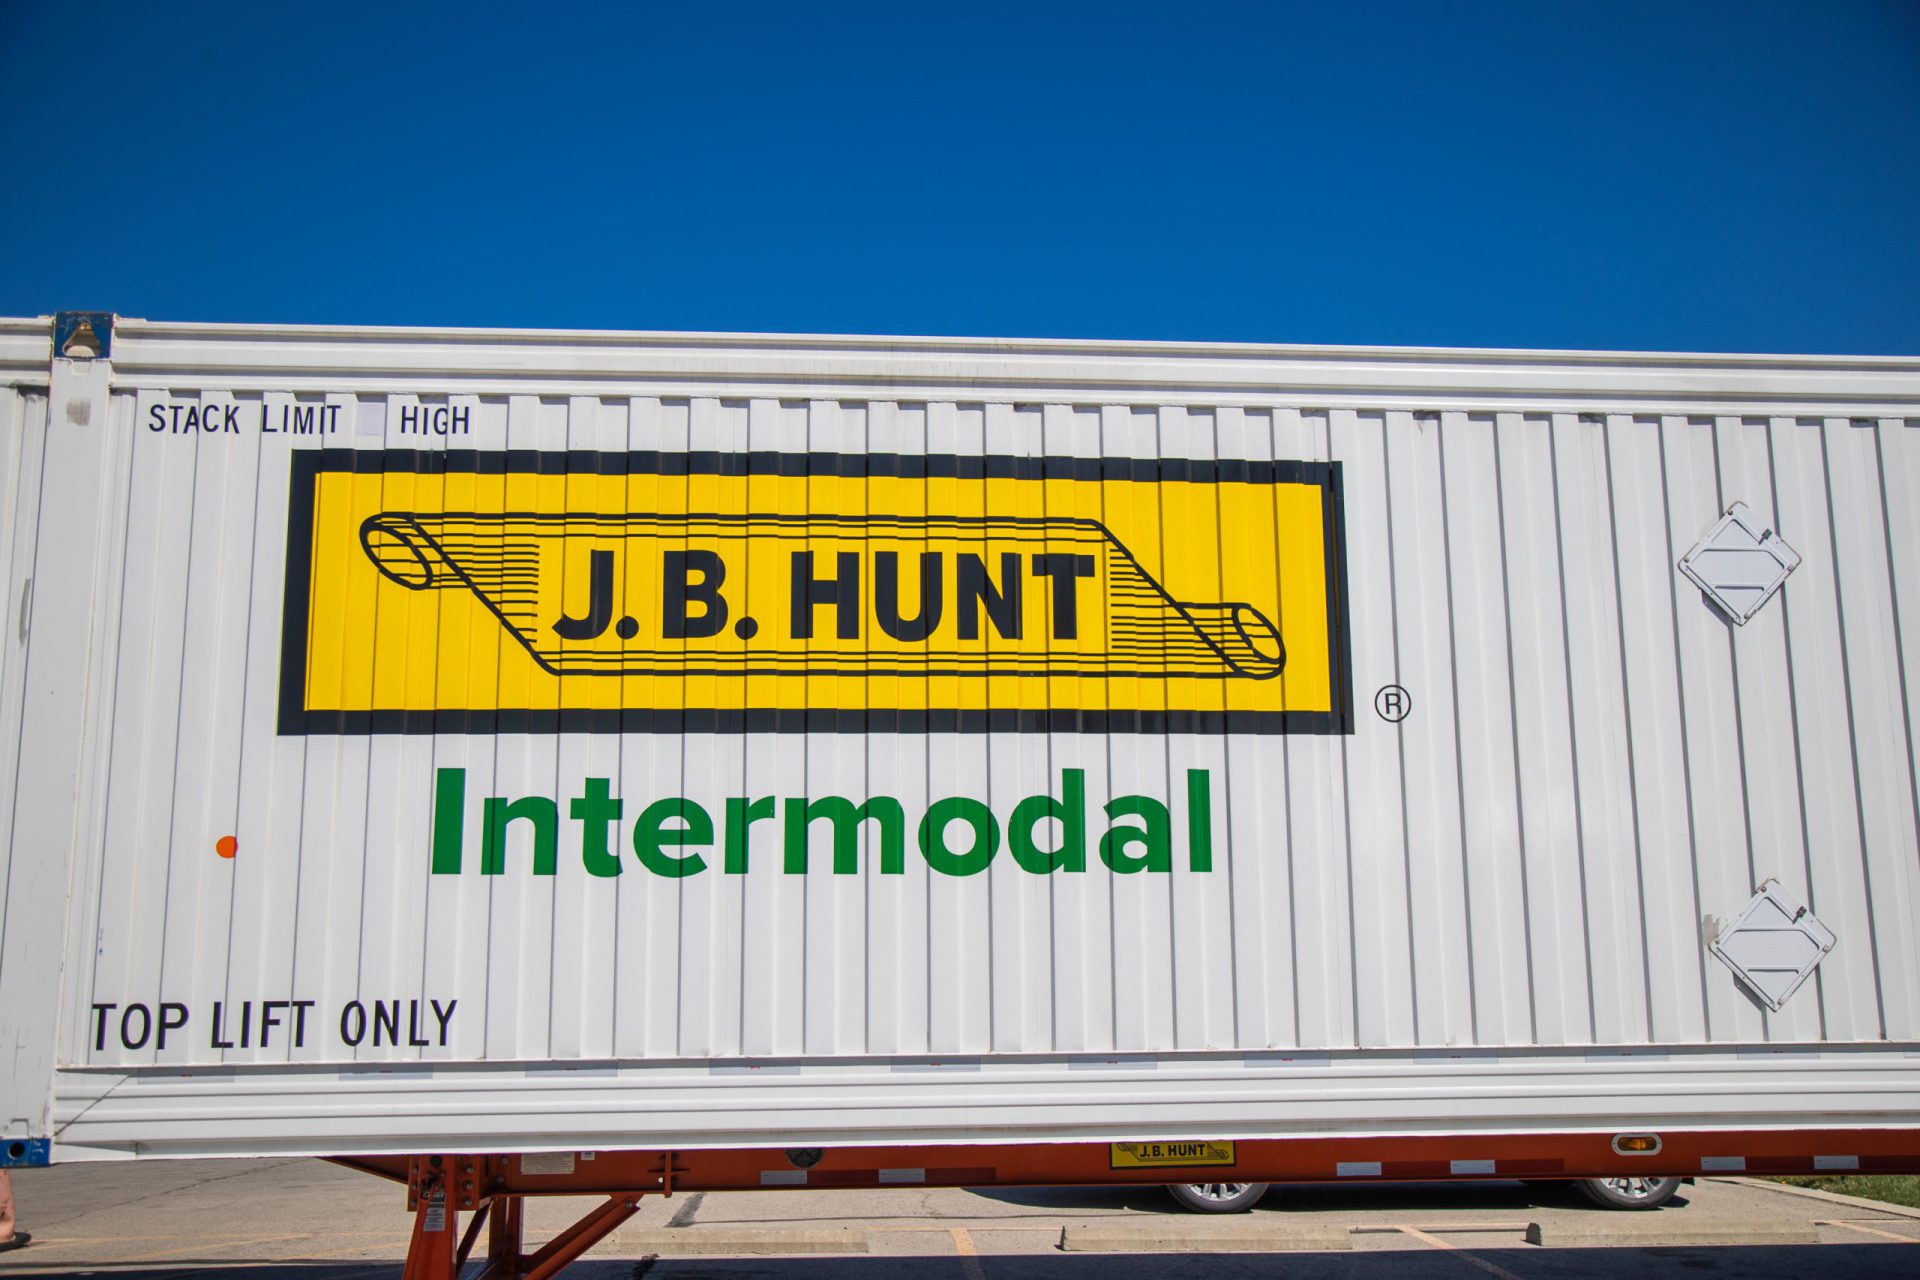 5 Reasons Truck Drivers Love J.B. Hunt Intermodal - J.B. Hunt Driver Blog